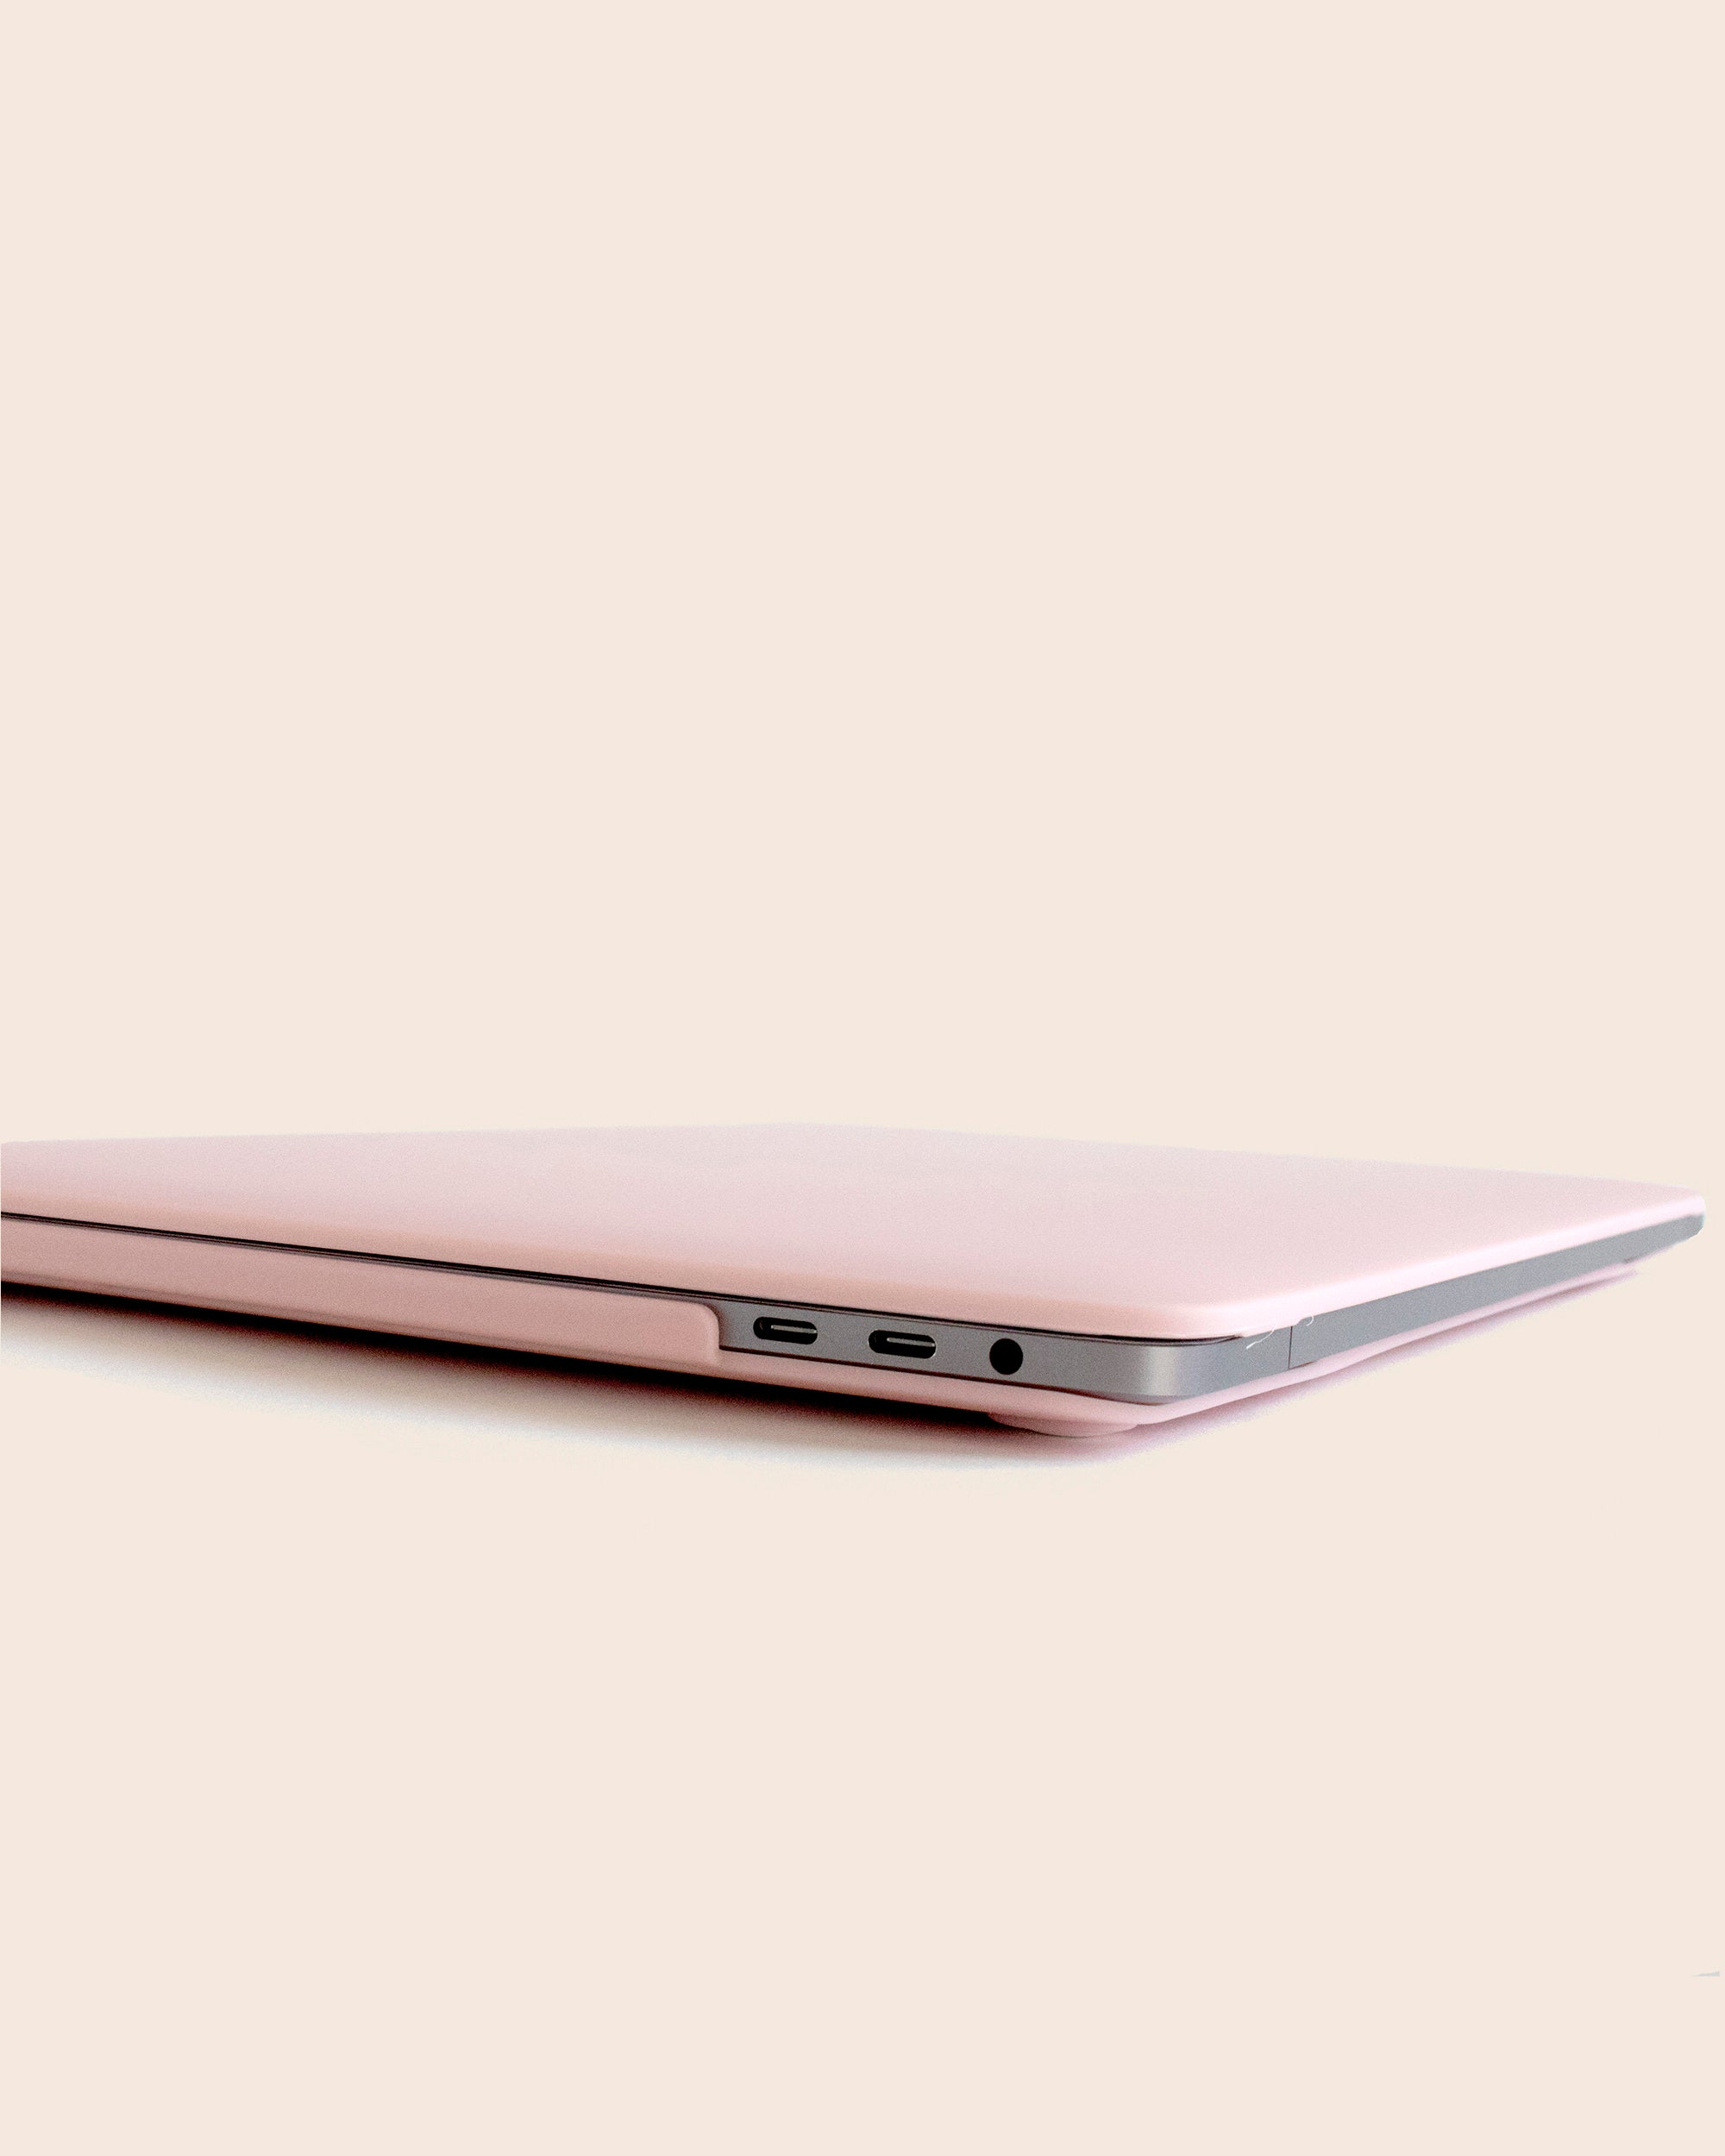 Pink MacBook Case